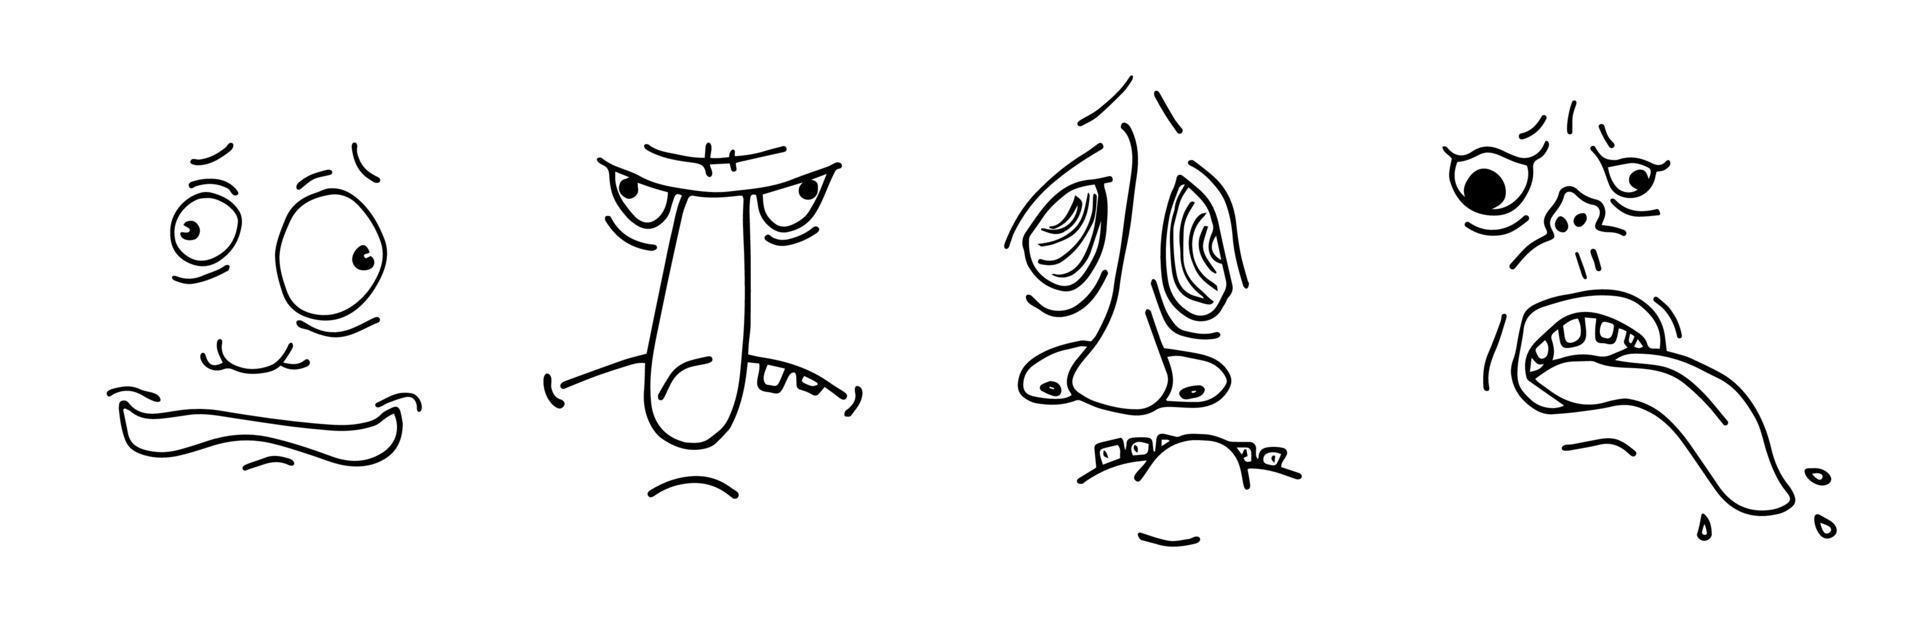 conjunto de esboço de desenho de rosto de homem feio. coleção de careta de personagem de desenho animado doodle esboço desenhado à mão. diferentes avatares de retrato de pessoa louca. ilustração gráfica isolada de vetor eps